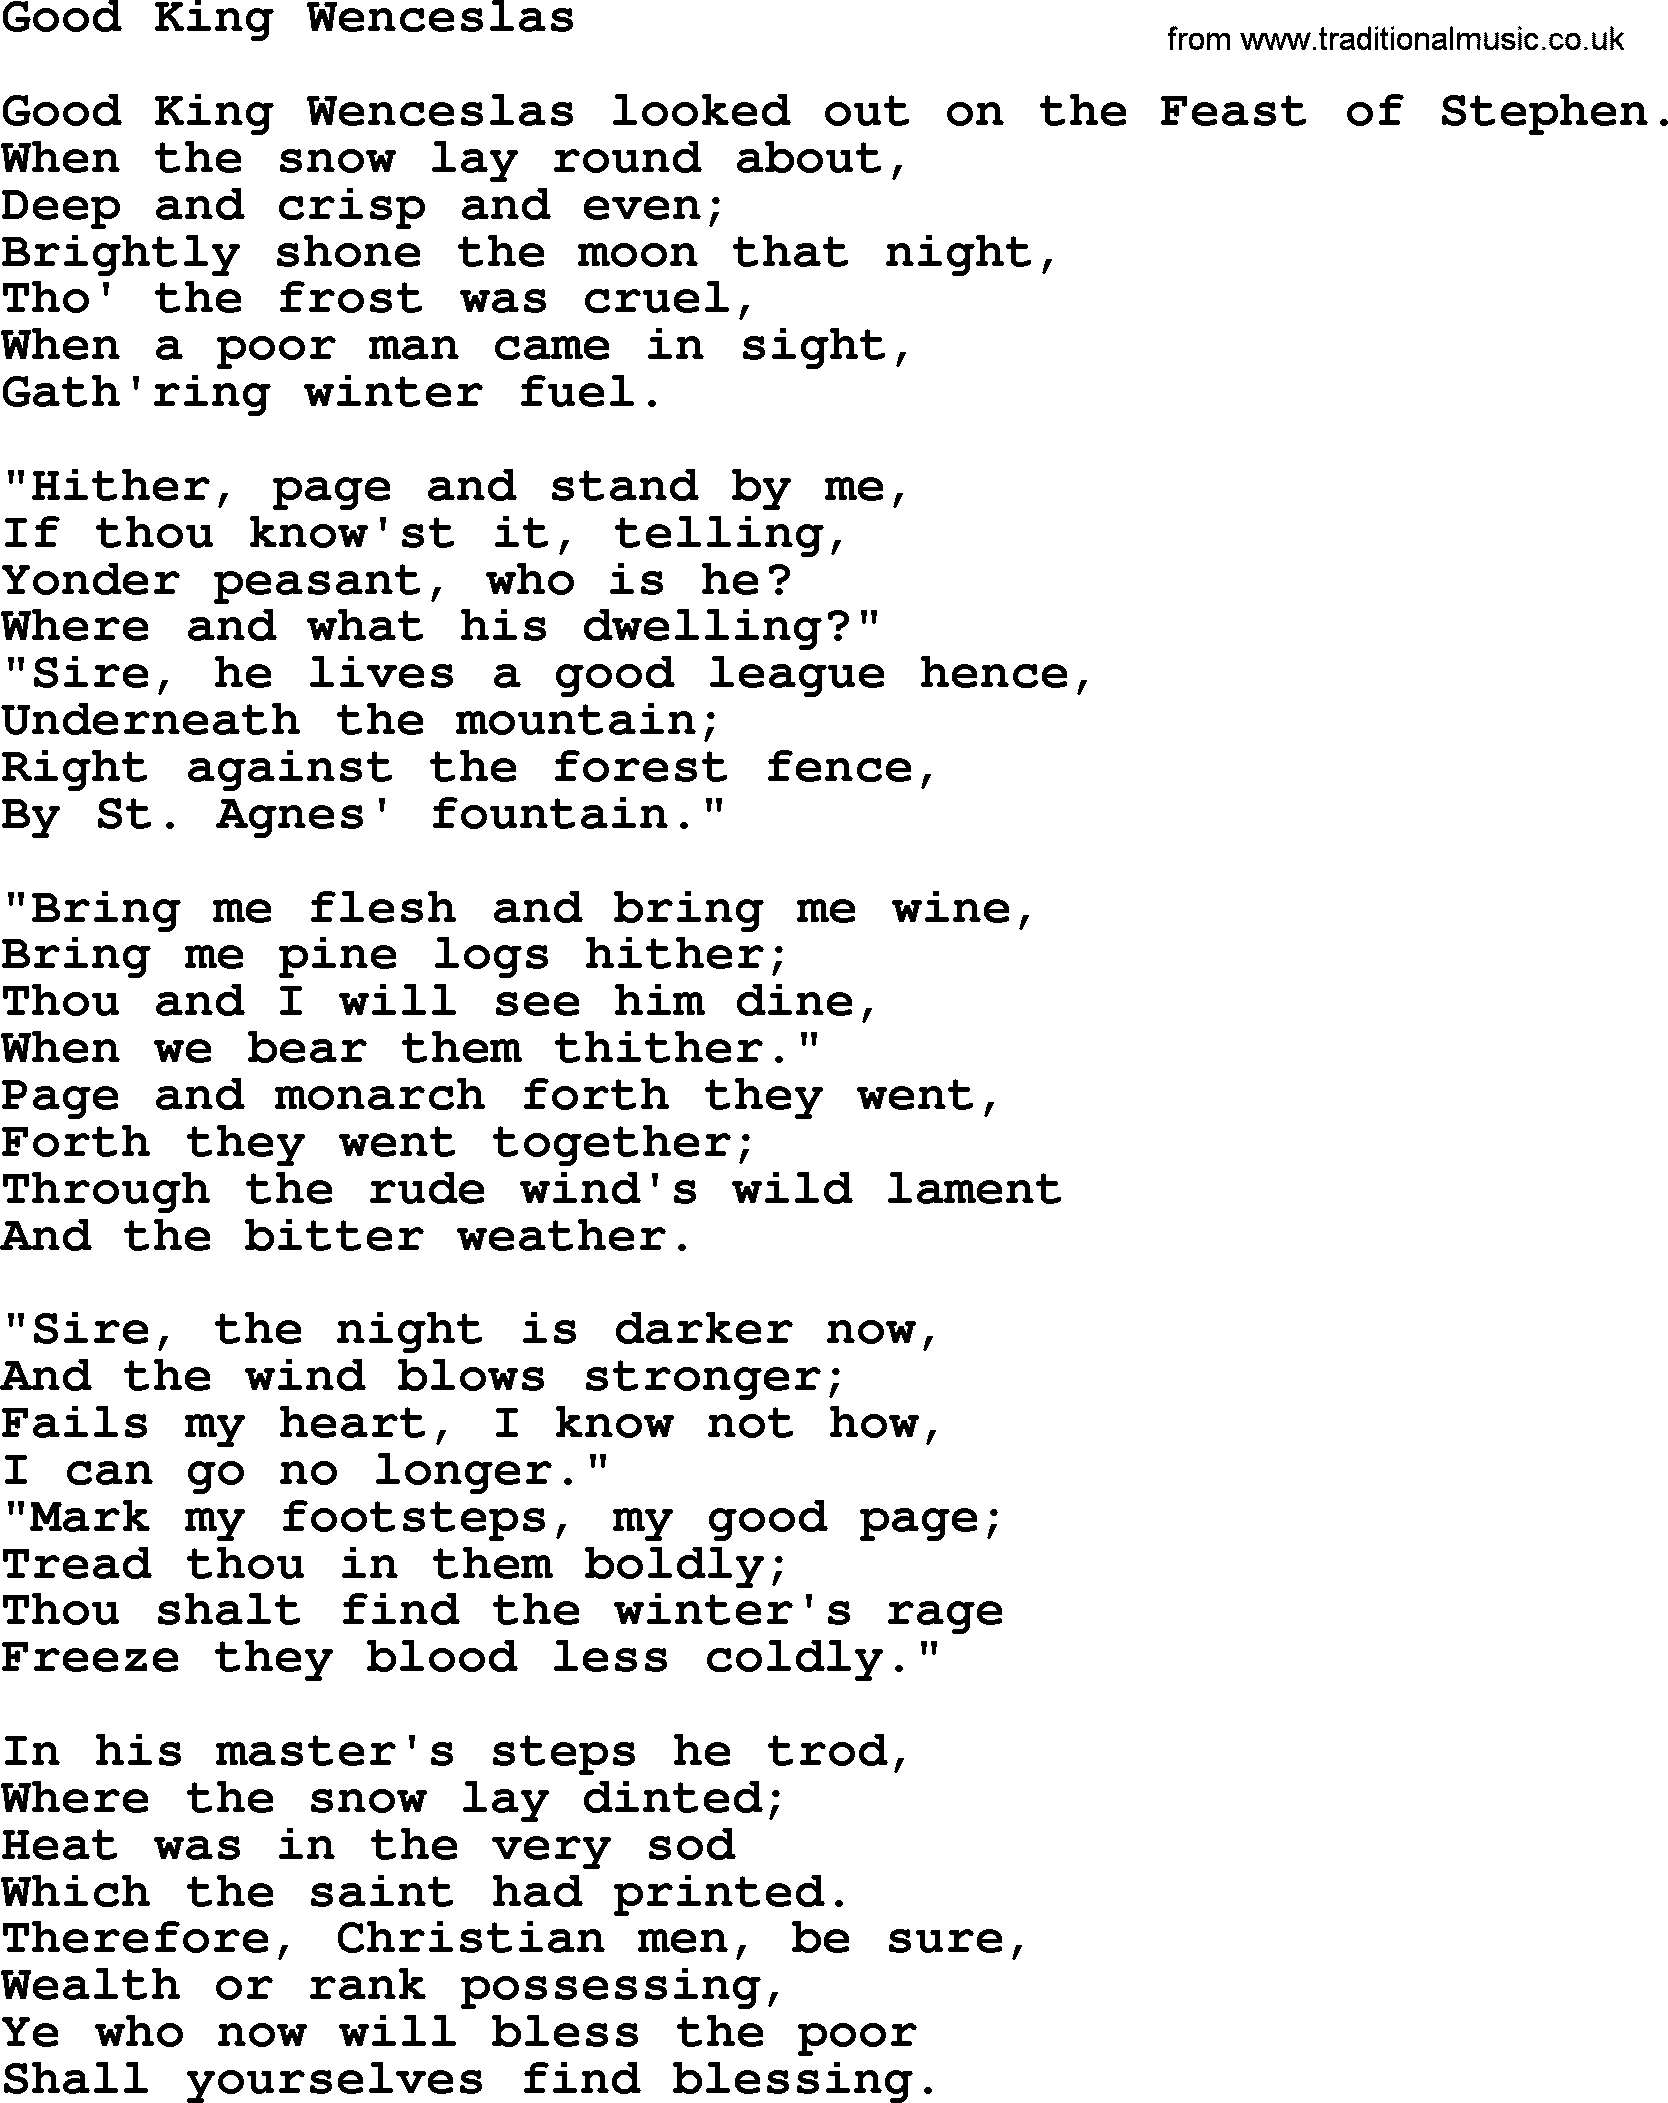 Catholic Hymn: Good King Wenceslas lyrics with PDF